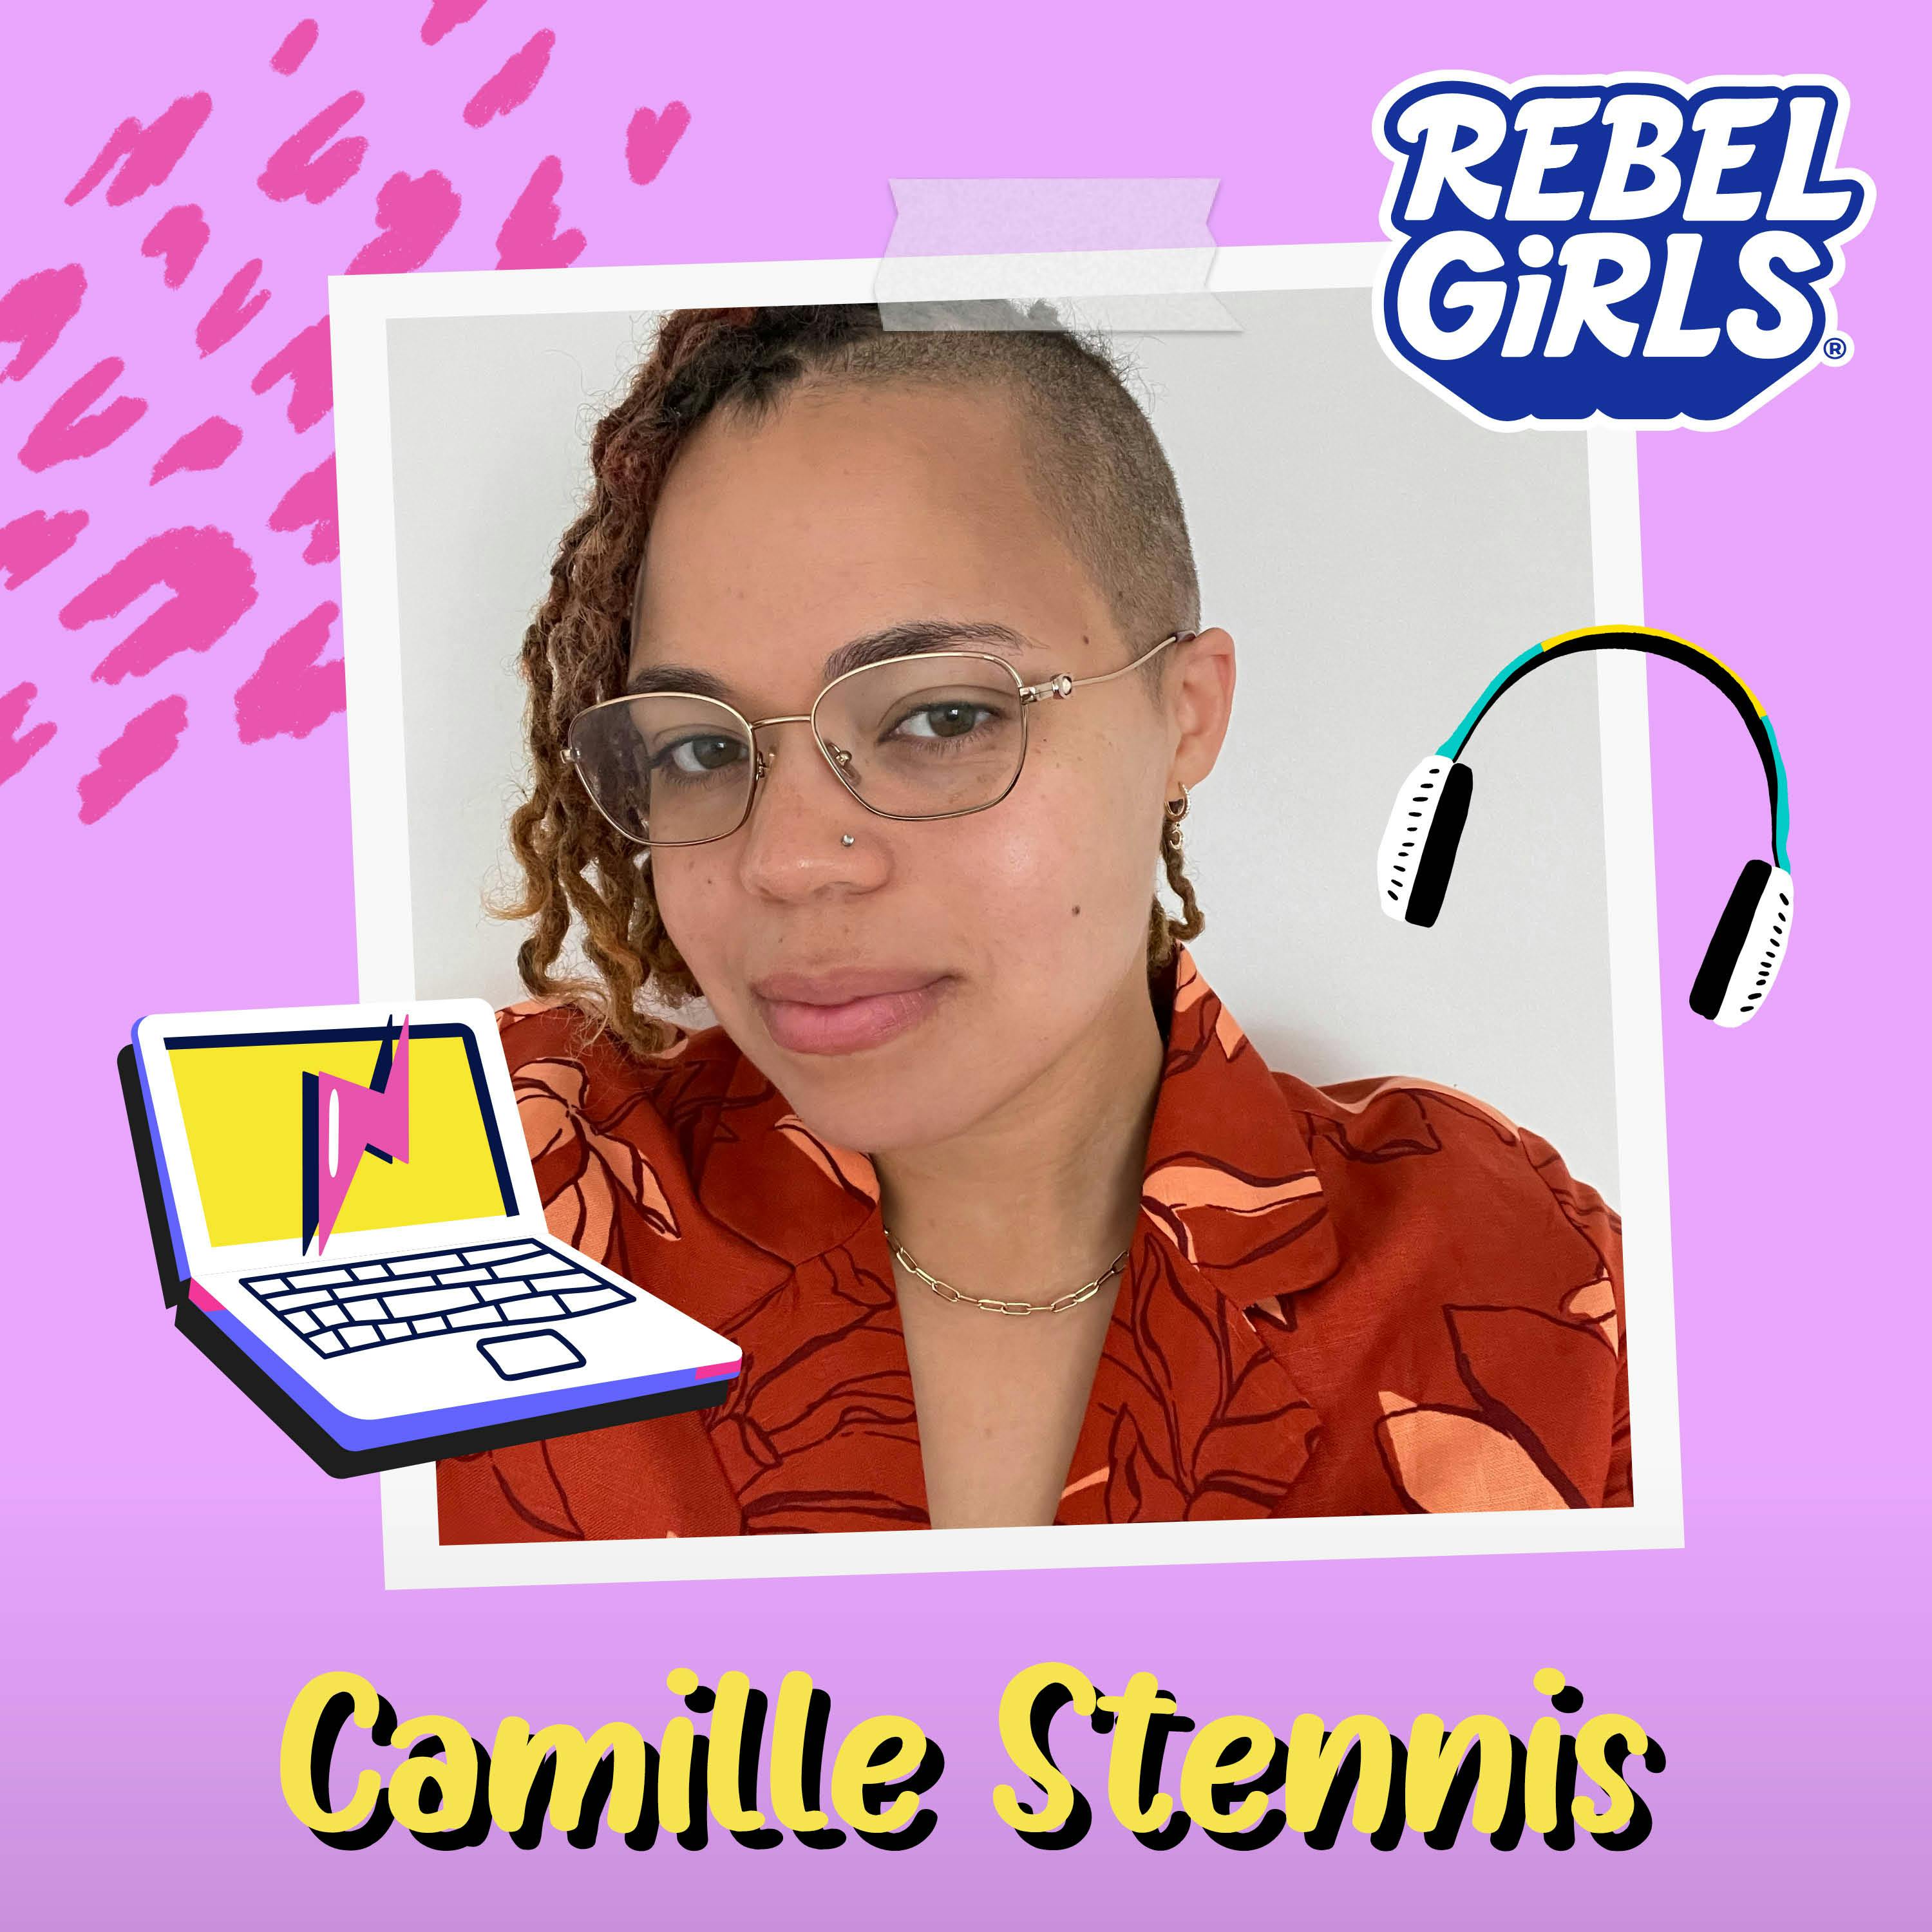 Get to Know Camille Stennis